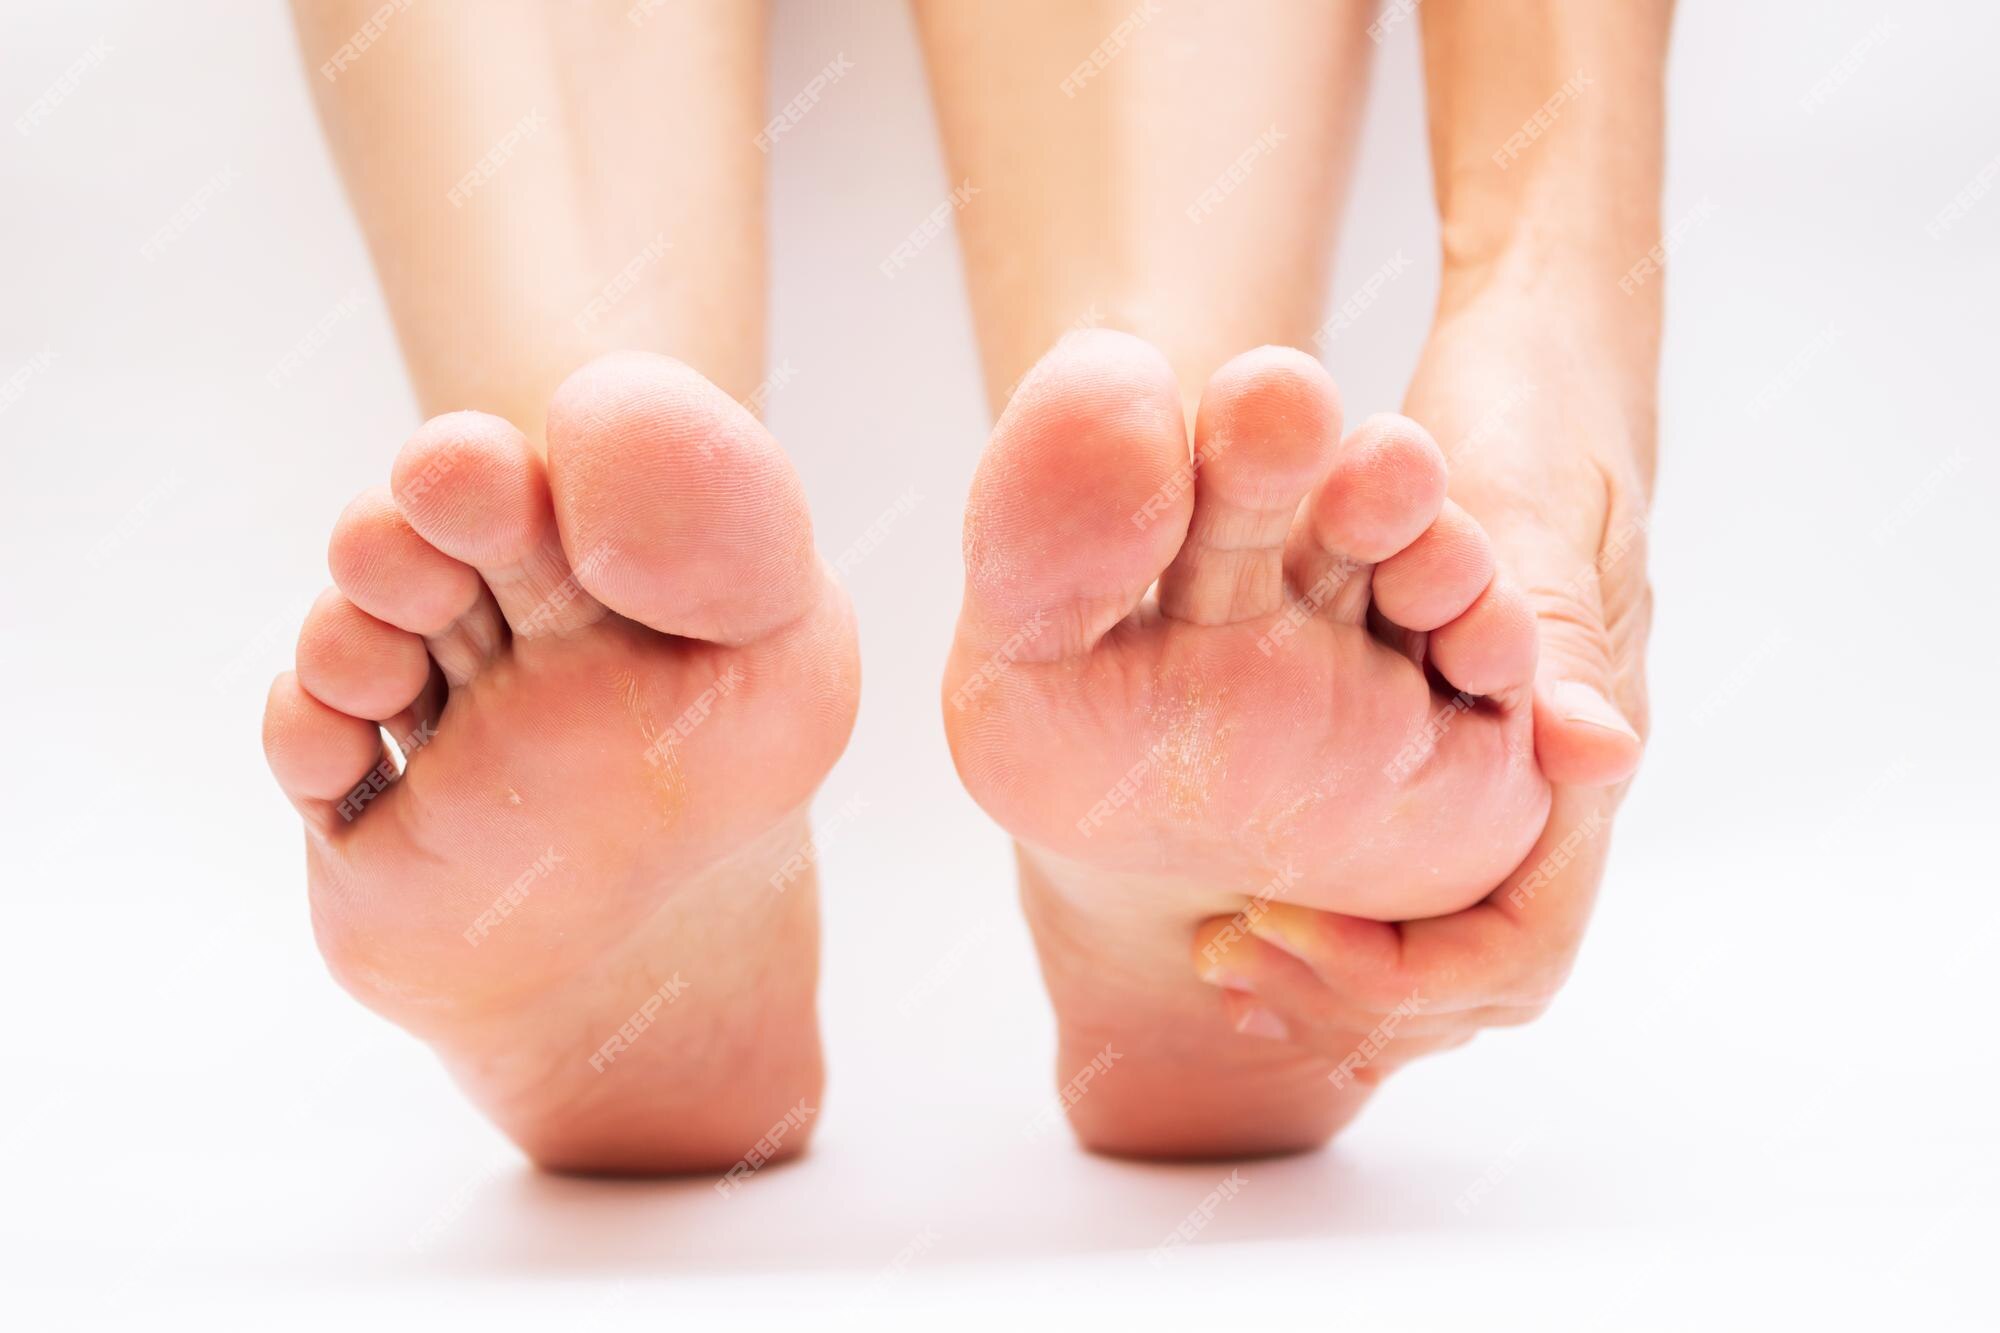 Het apparaat Comorama Becks Voetpijn door ongemakkelijke schoenen vrouwelijke voeten met schilferige  huid en likdoorns een vrouw houdt een zere voet vast | Premium Foto